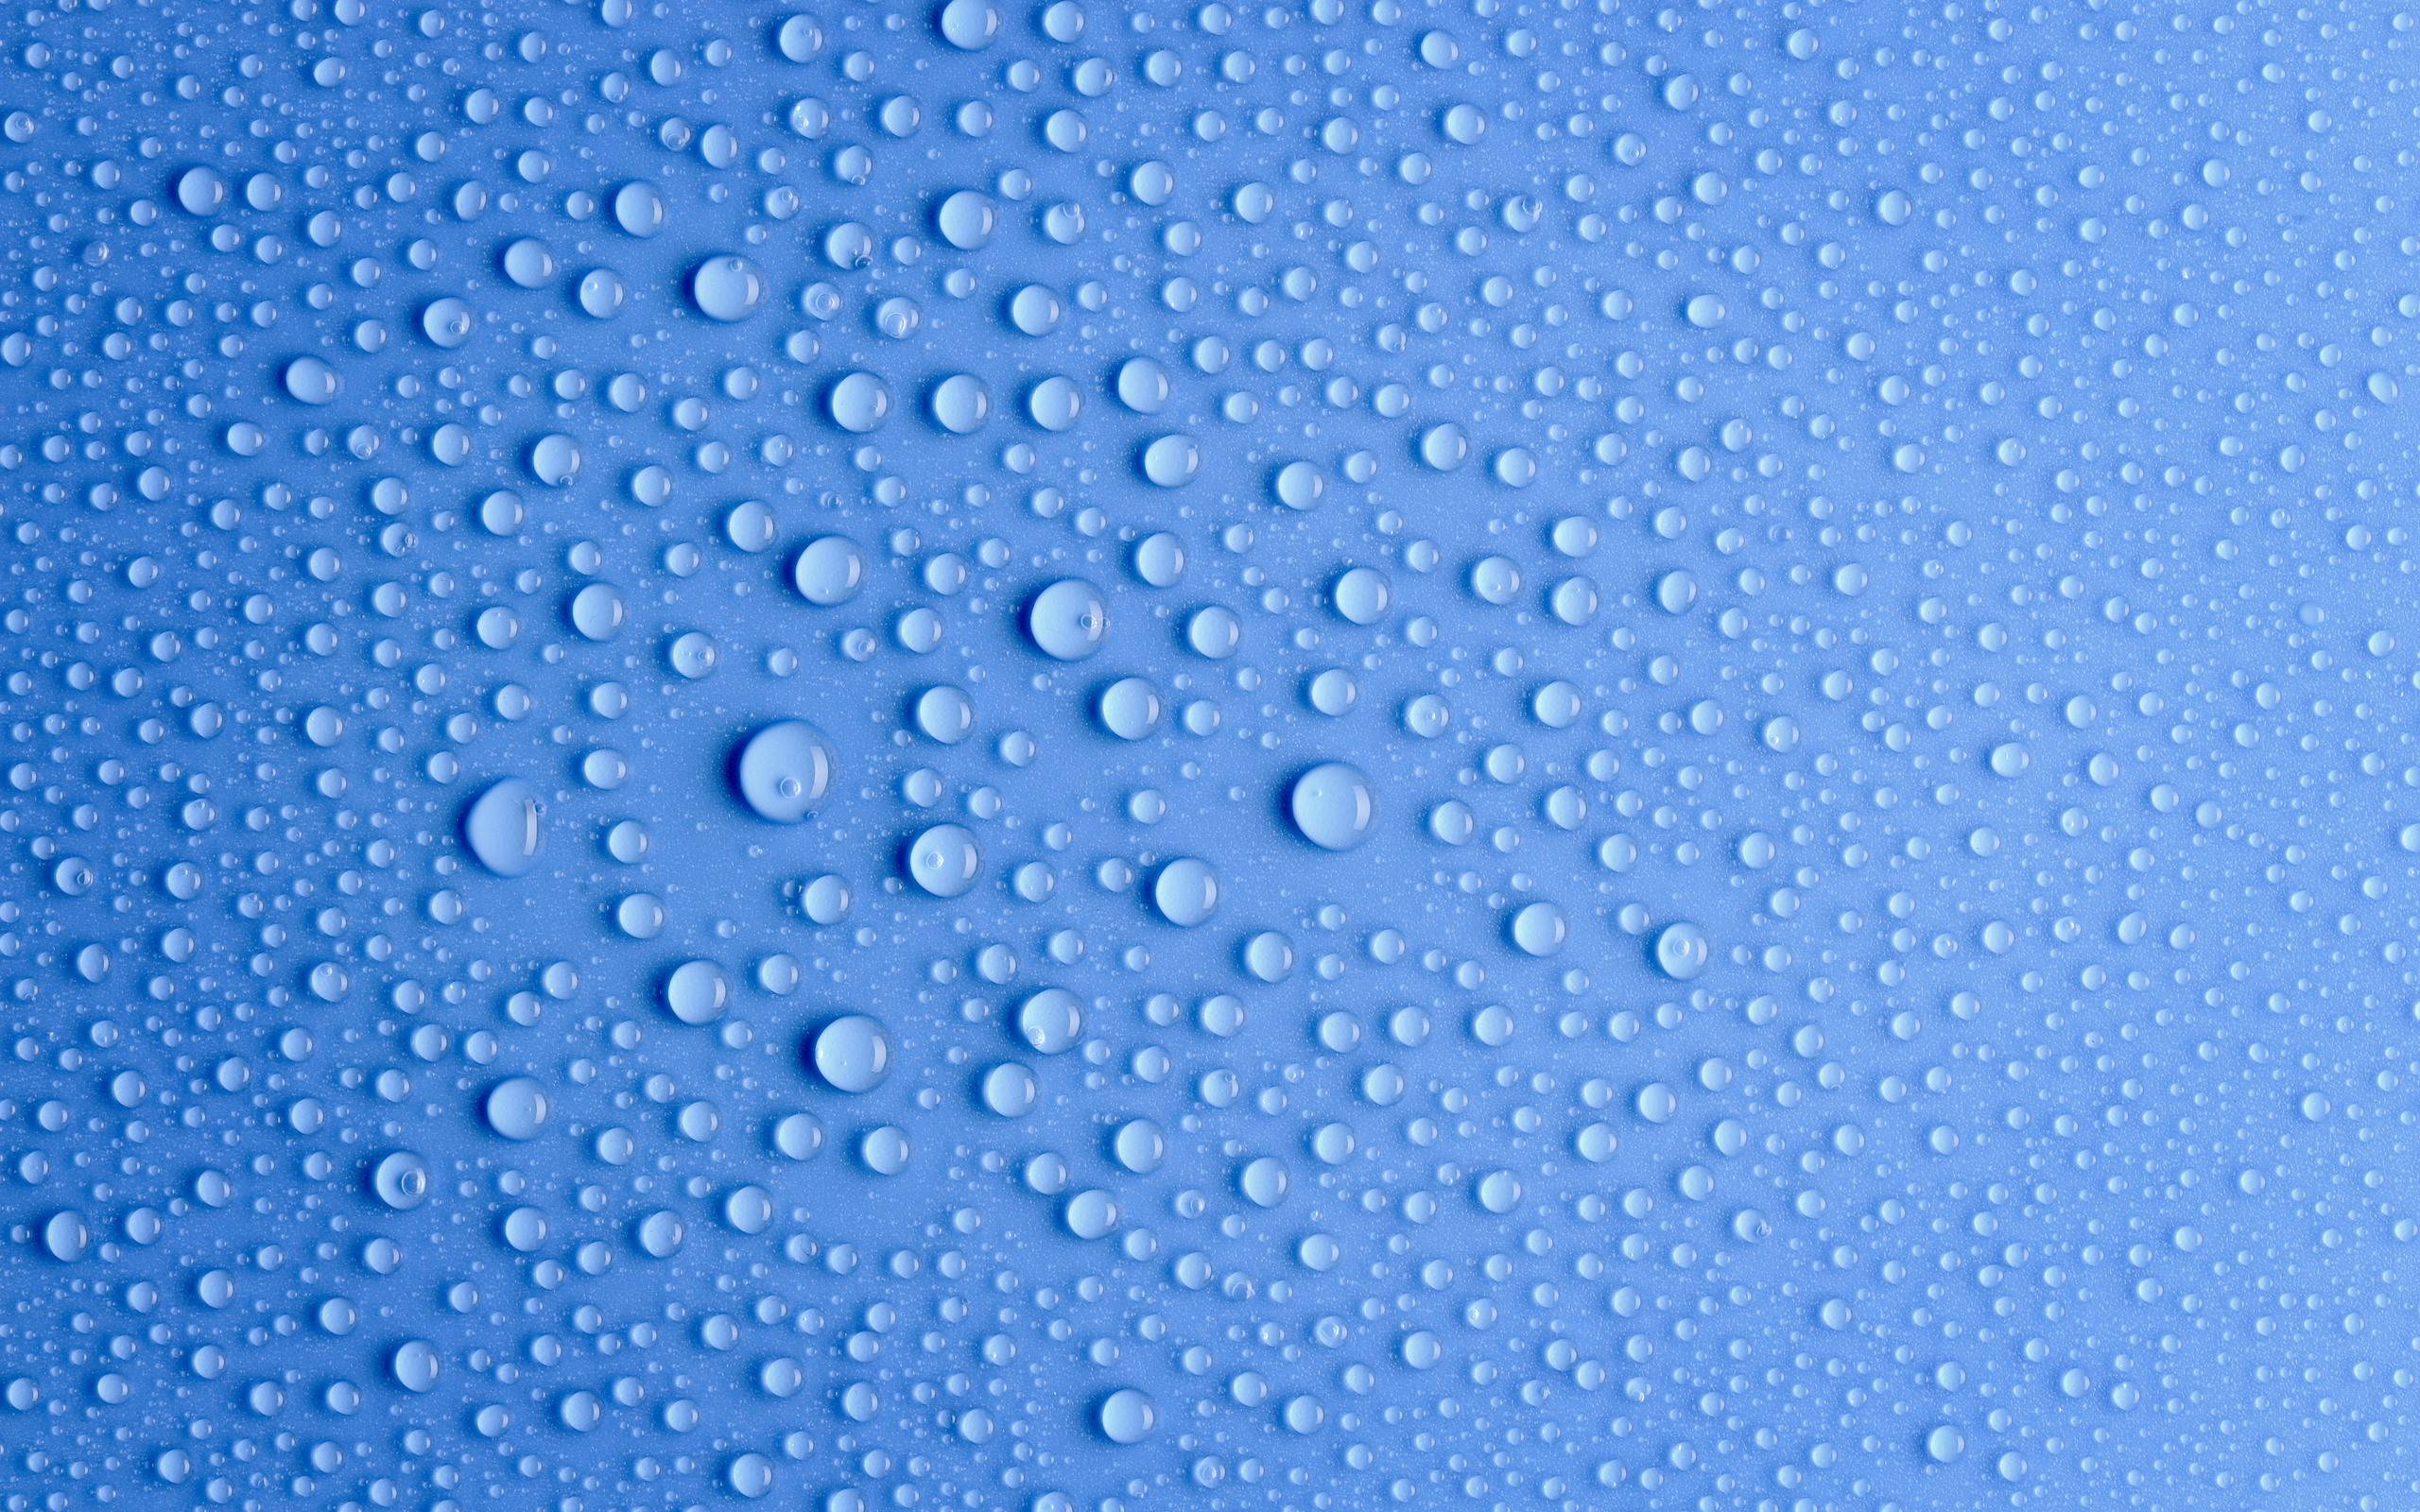 3 cool water drops hd wallpaper,blue,water,drop,azure,pattern